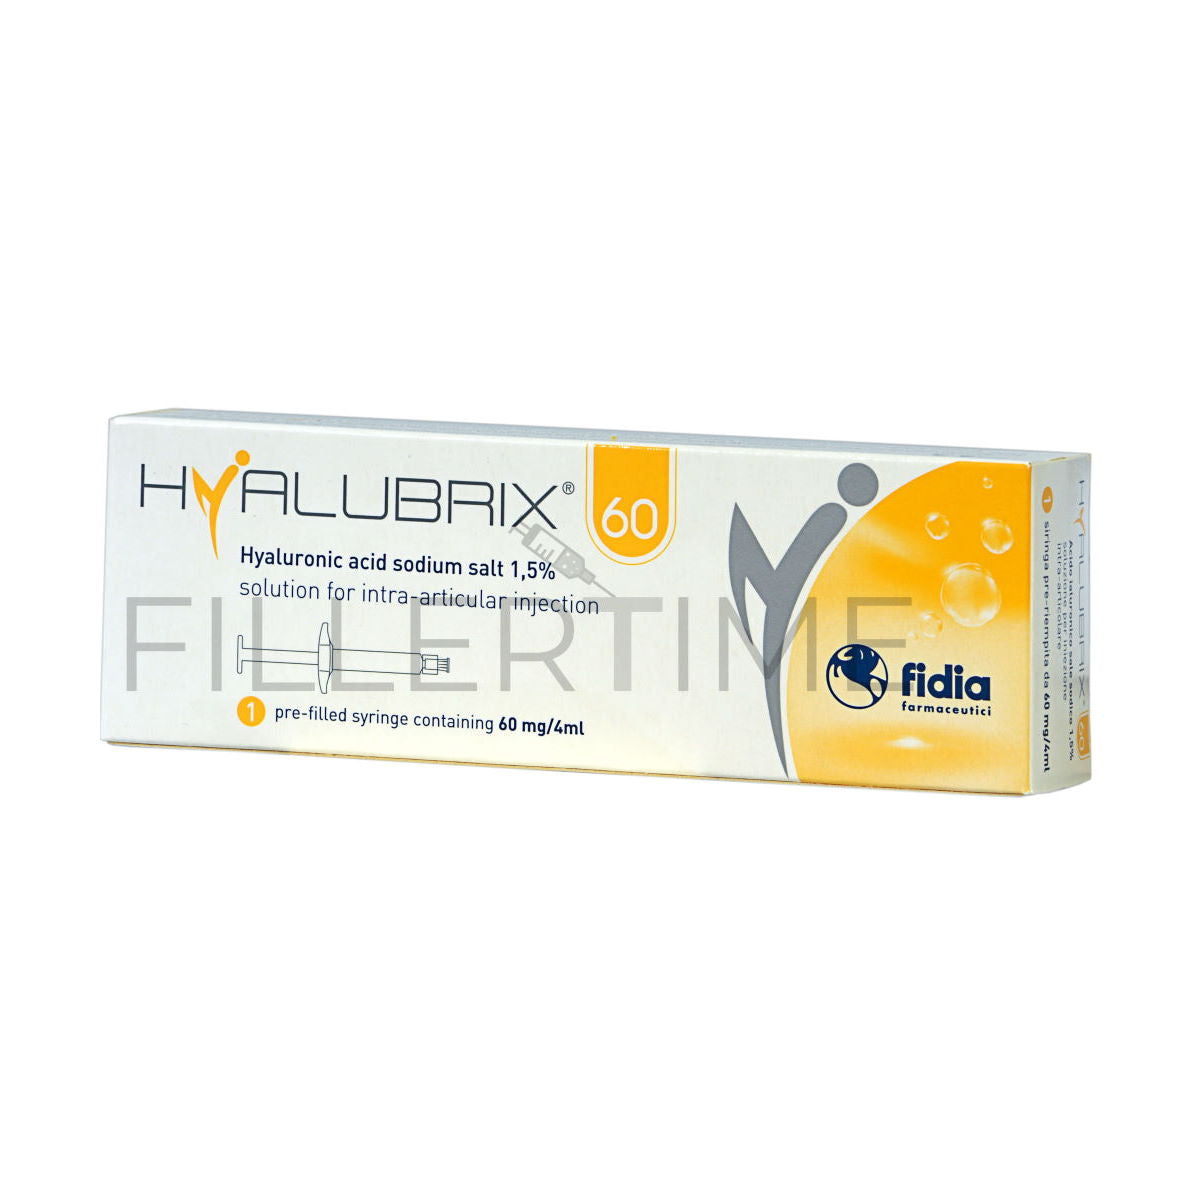 Hyalubrix 60
Contiene 1 siringa da 4ml
Indicato per ripristinare le proprietà visco-elastiche del liquido presente nelle articolazioni, riducendo così la sensazione di dolore e spesso anche la difficoltà di movimento. Consigliato per combattere l'artrosi.